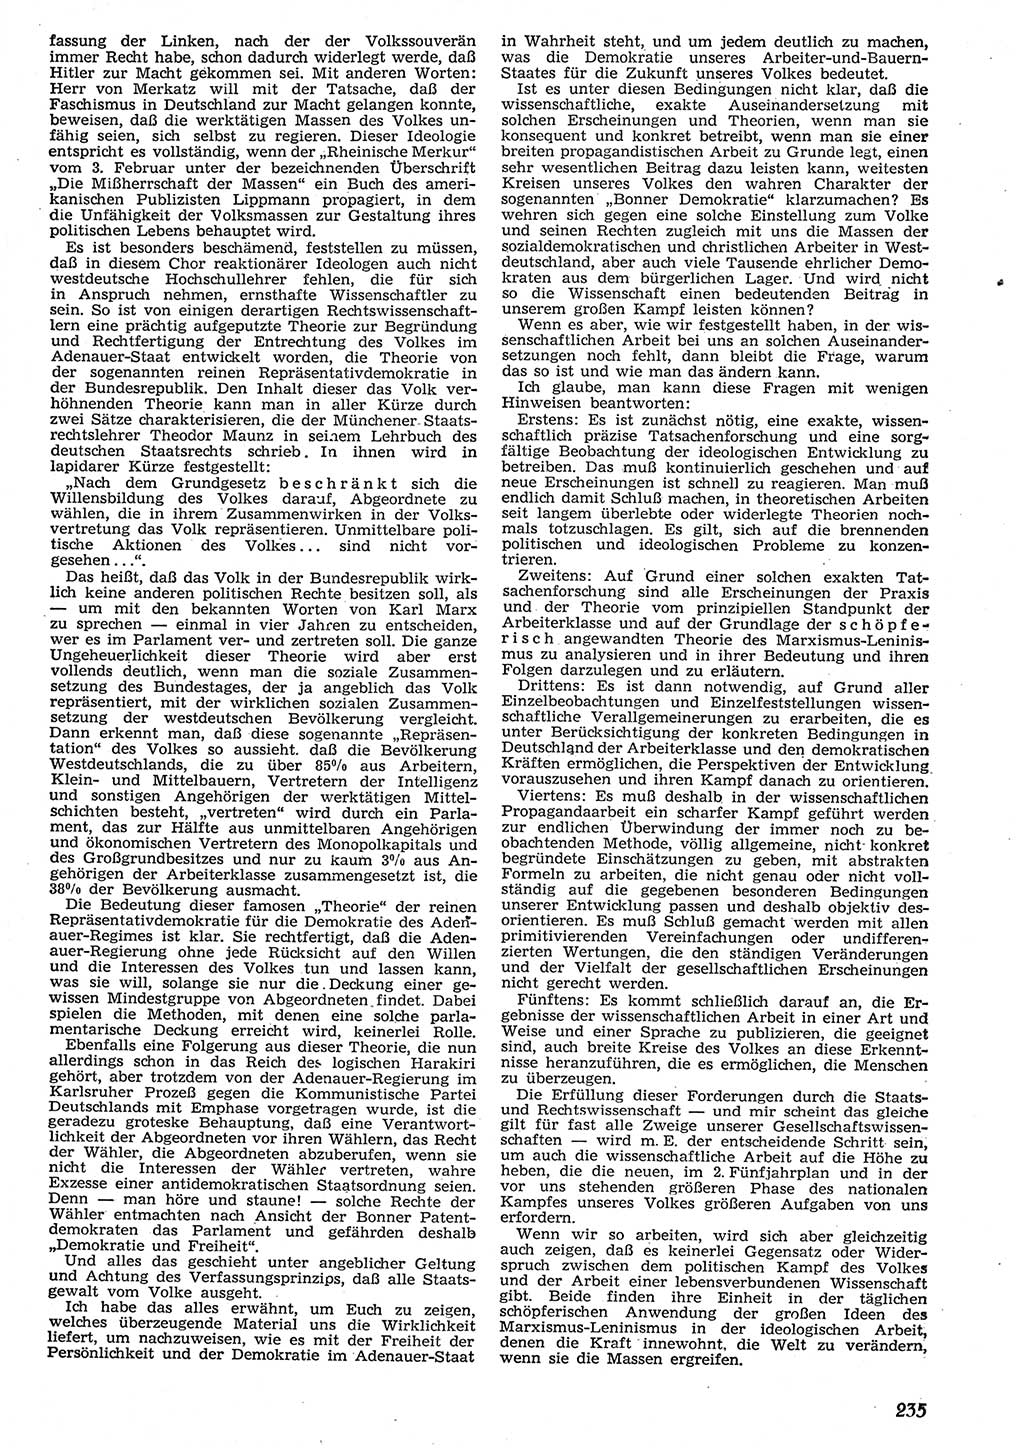 Neue Justiz (NJ), Zeitschrift für Recht und Rechtswissenschaft [Deutsche Demokratische Republik (DDR)], 10. Jahrgang 1956, Seite 235 (NJ DDR 1956, S. 235)